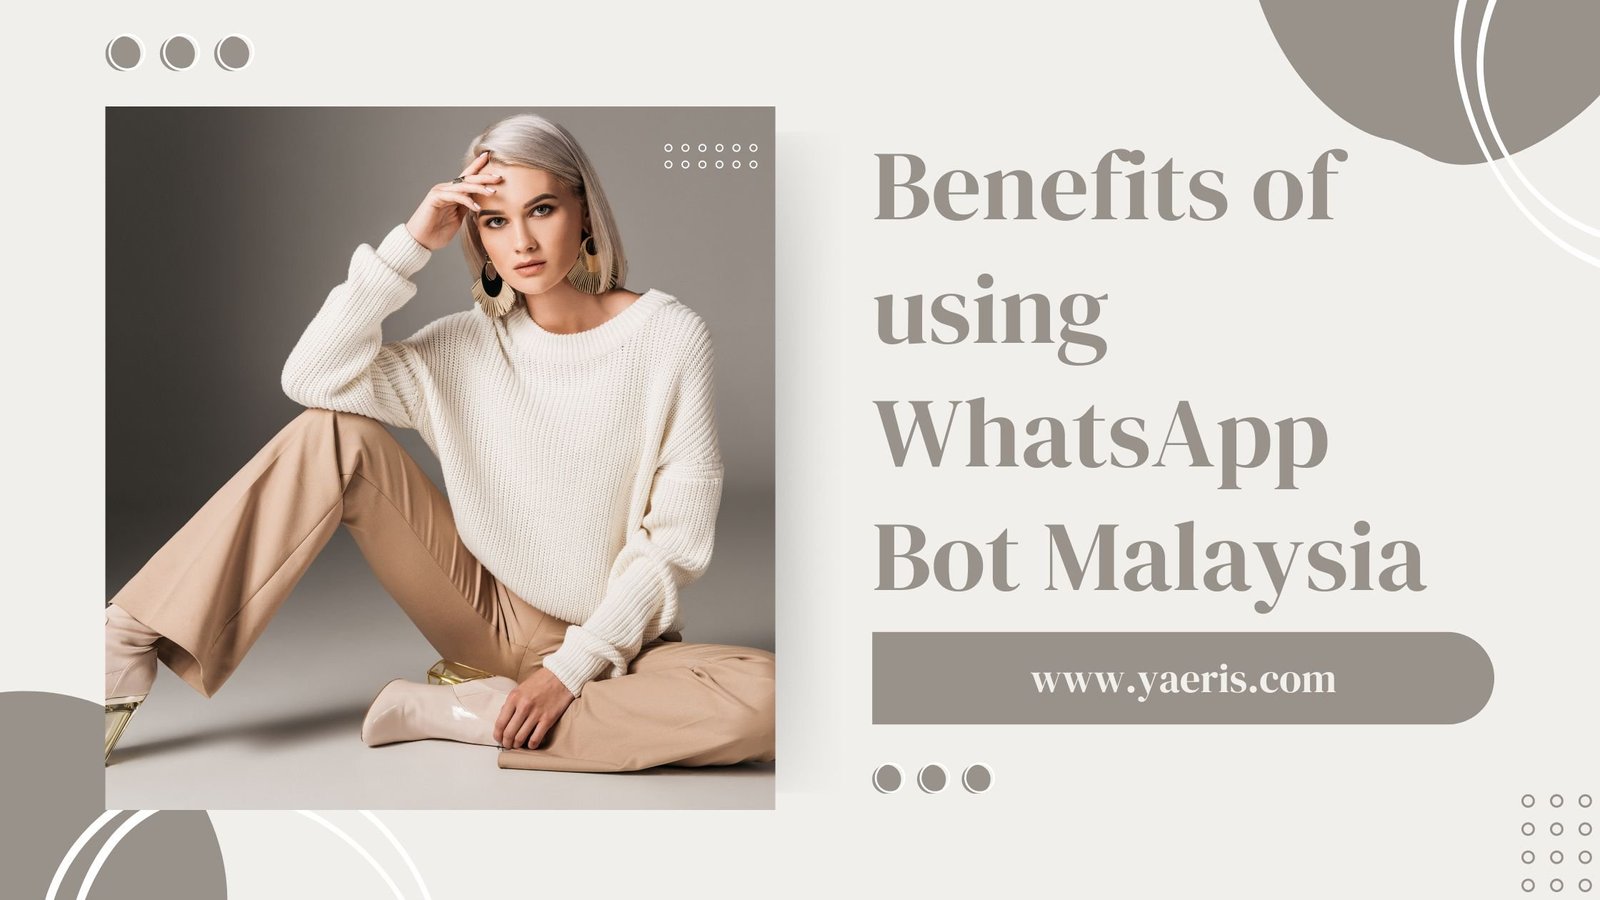 Benefits of using WhatsApp Bot Malaysia